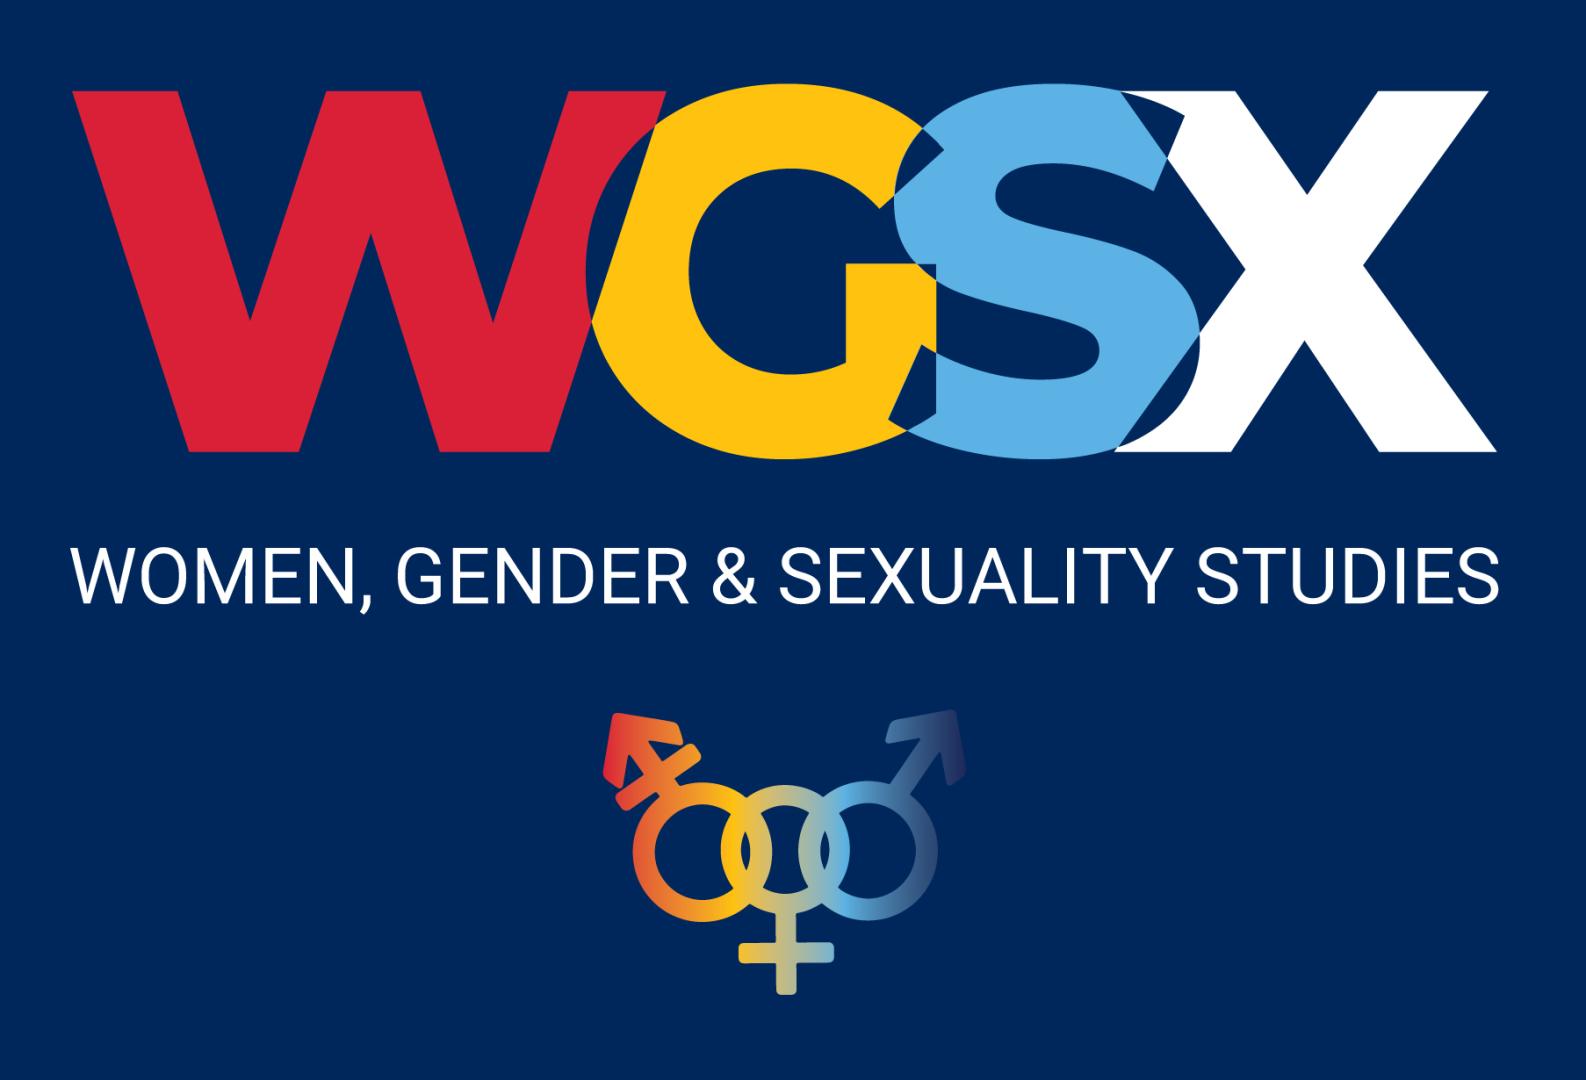 WGSX logo